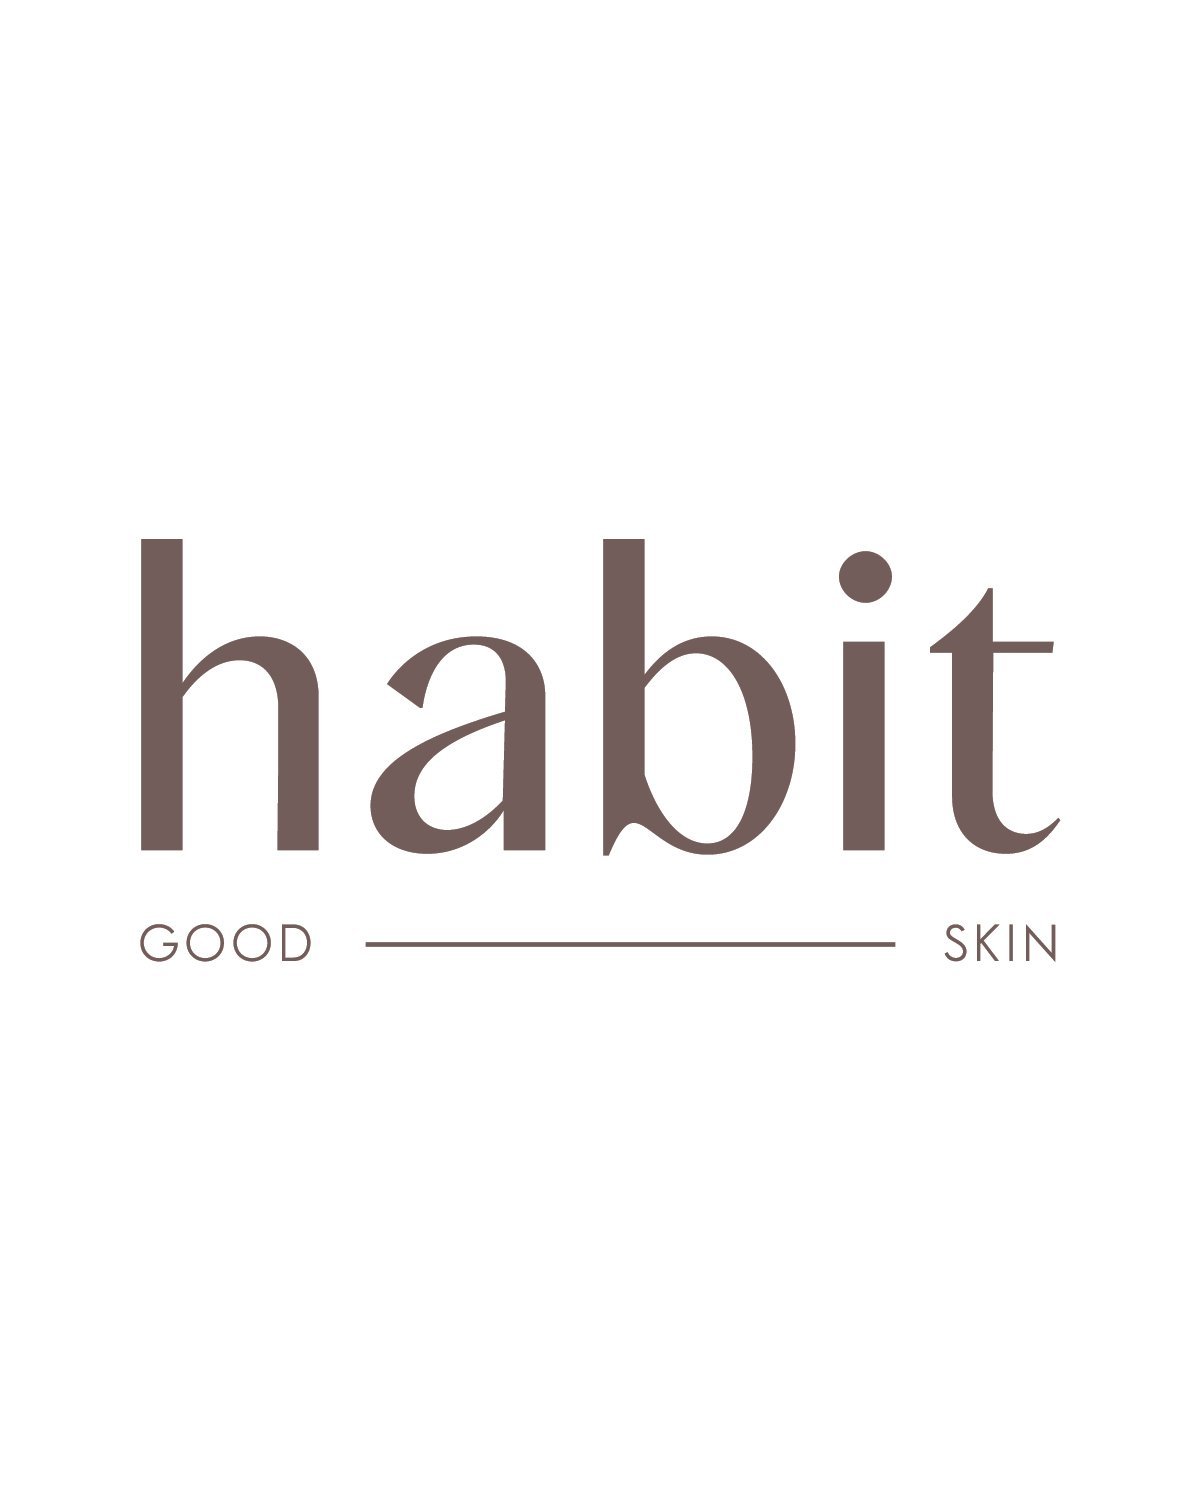 Habit Med Spa Logo.jpg